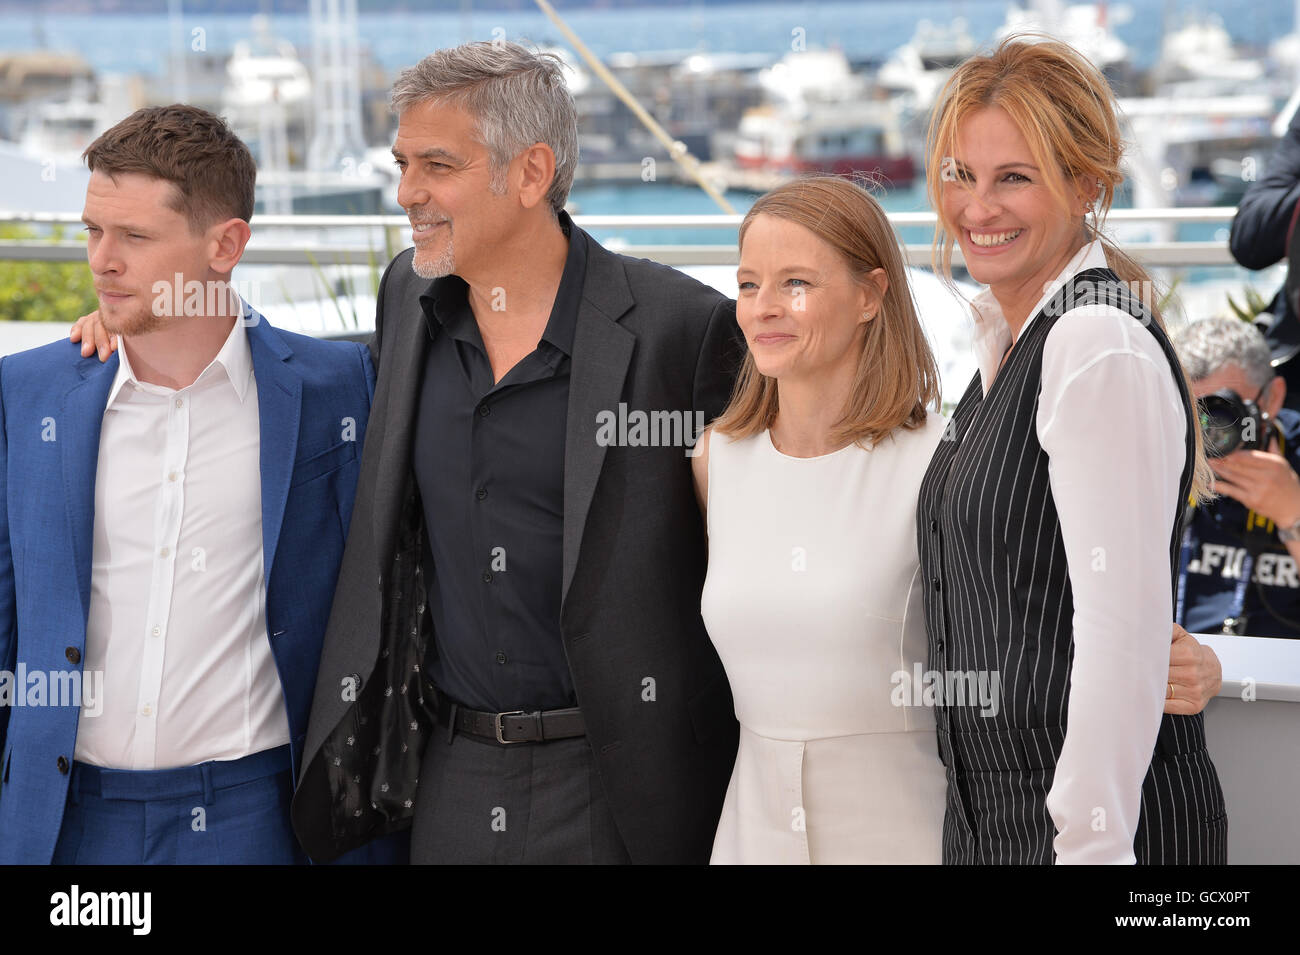 CANNES, FR - 12. Mai 2016: Schauspielerin/Regisseurin Jodie Foster & Schauspieler Jack O' Connell, George Clooney & Julia Roberts bei der Fototermin für "Geld Monster" auf dem 69. Festival de Cannes. Stockfoto